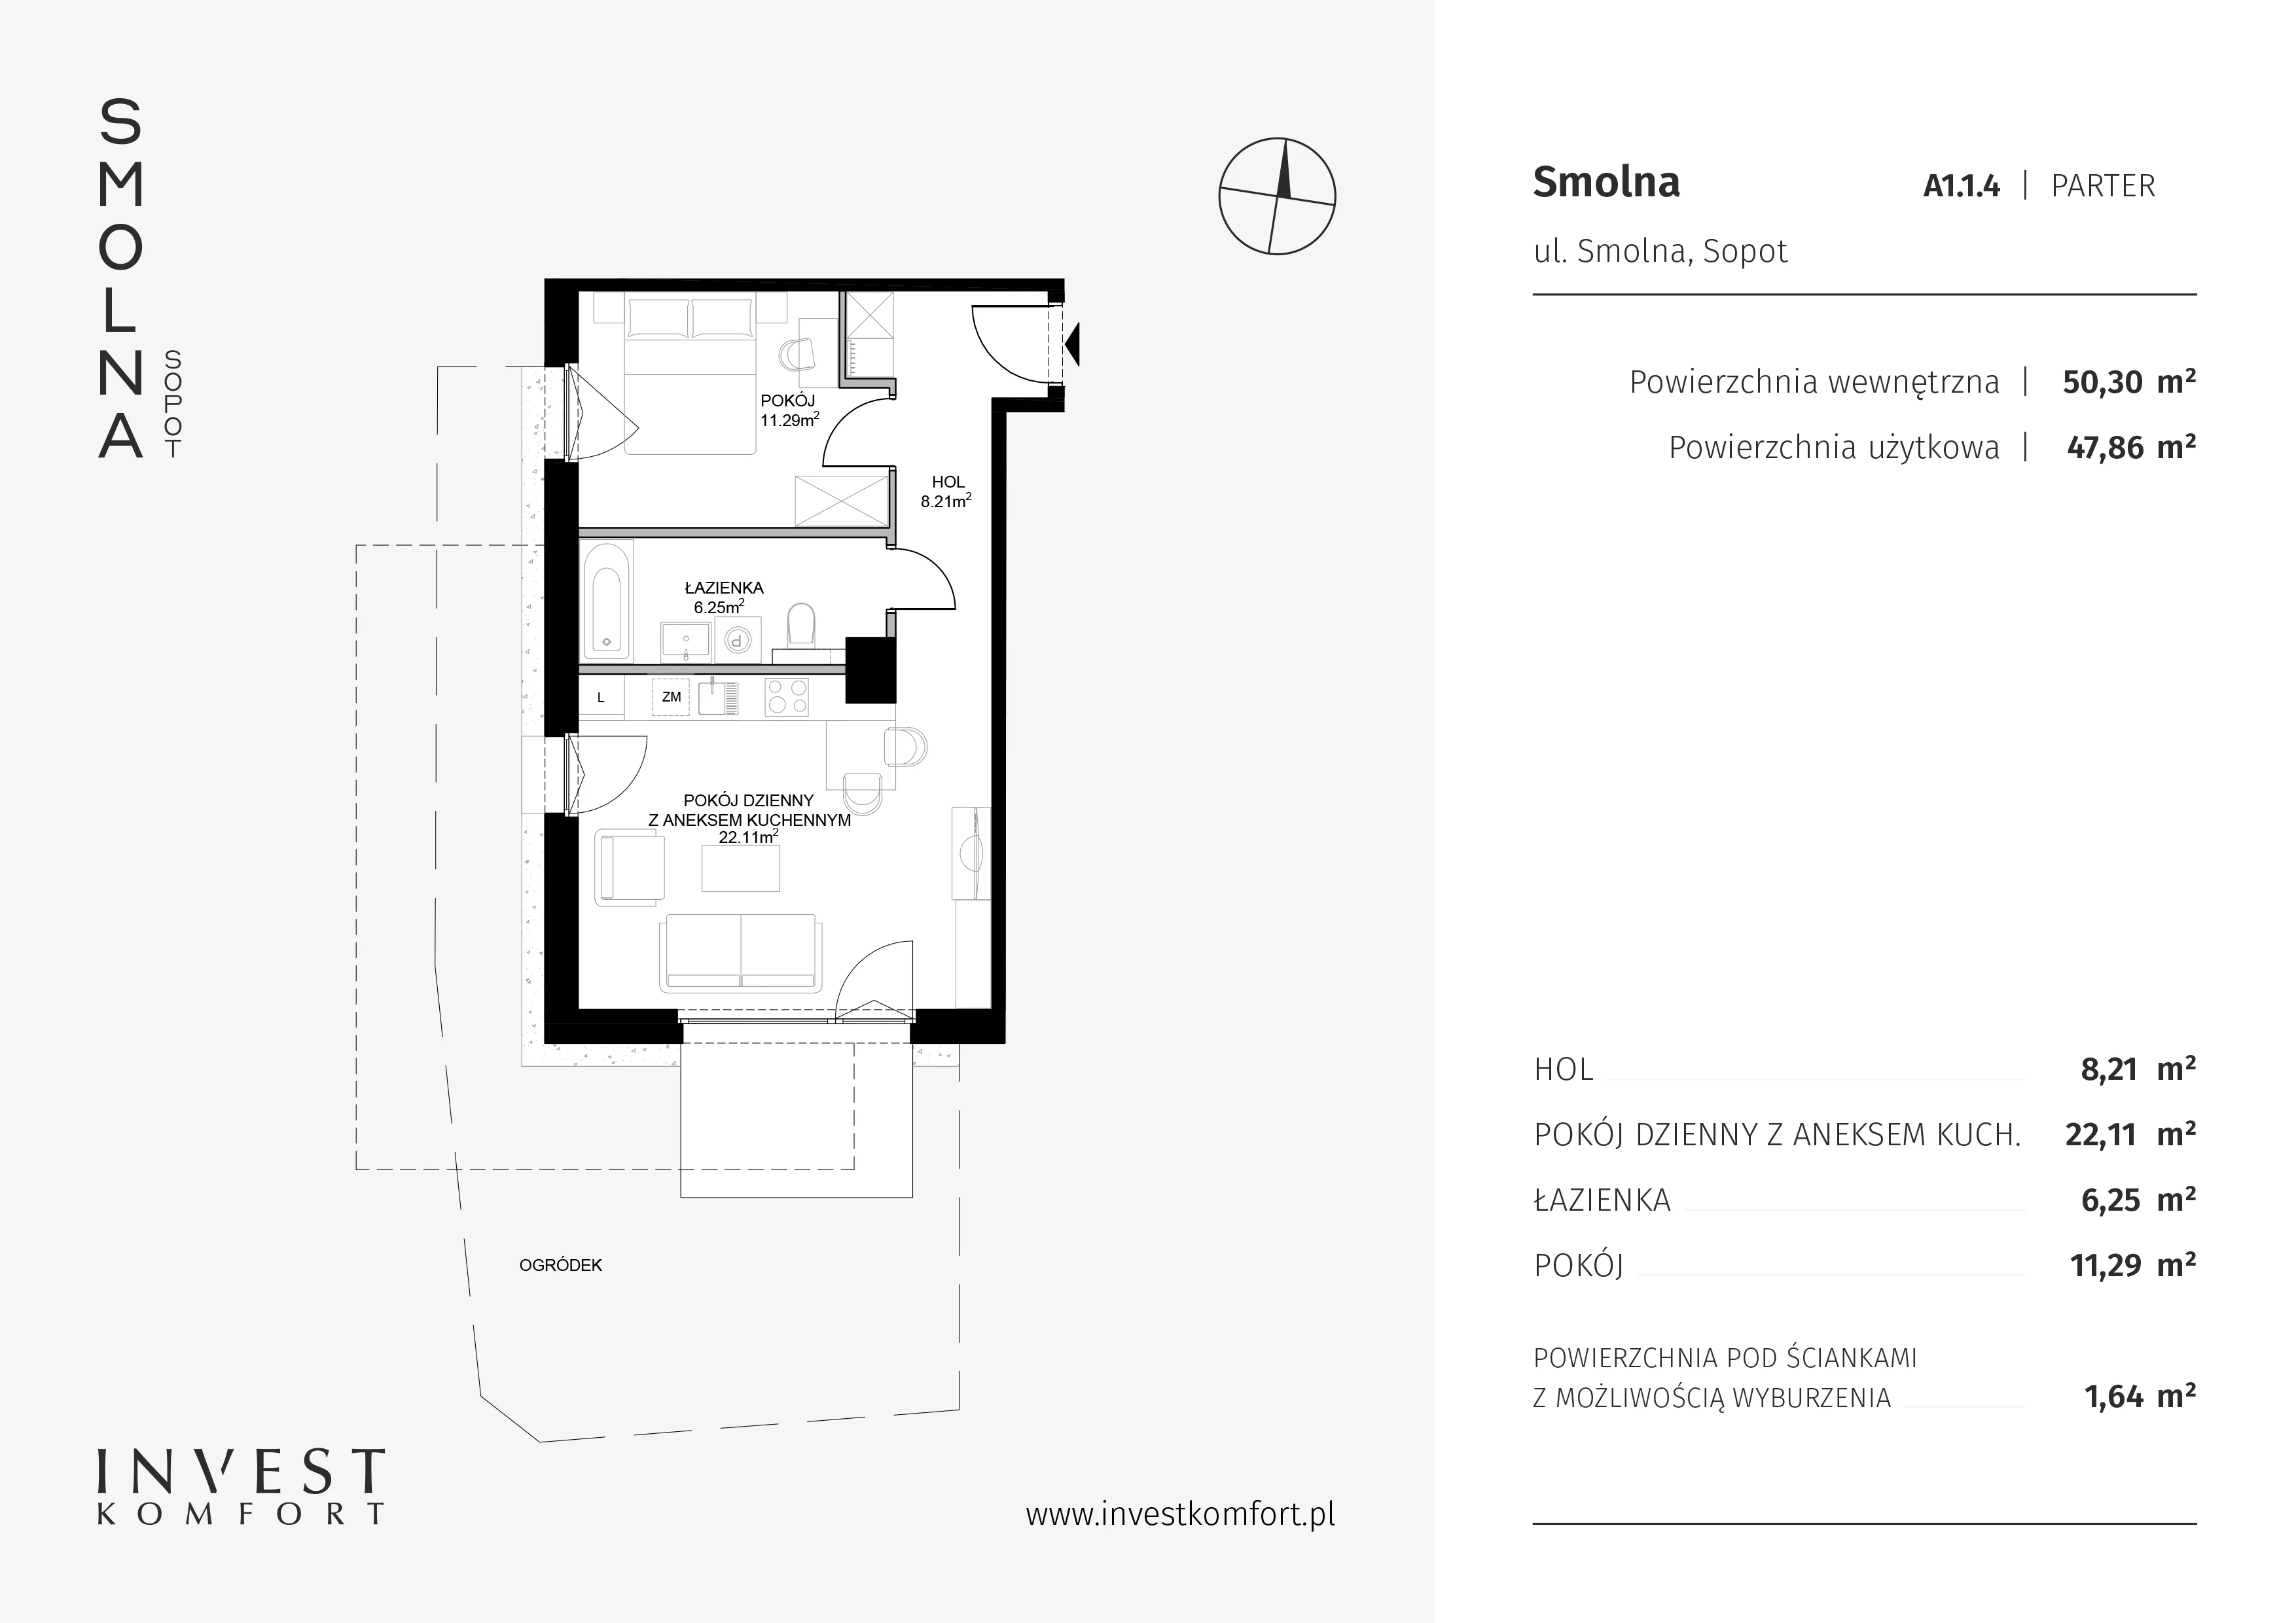 Mieszkanie 50,30 m², parter, oferta nr A1.1.4, Smolna, Sopot, Świemirowo, ul. Smolna